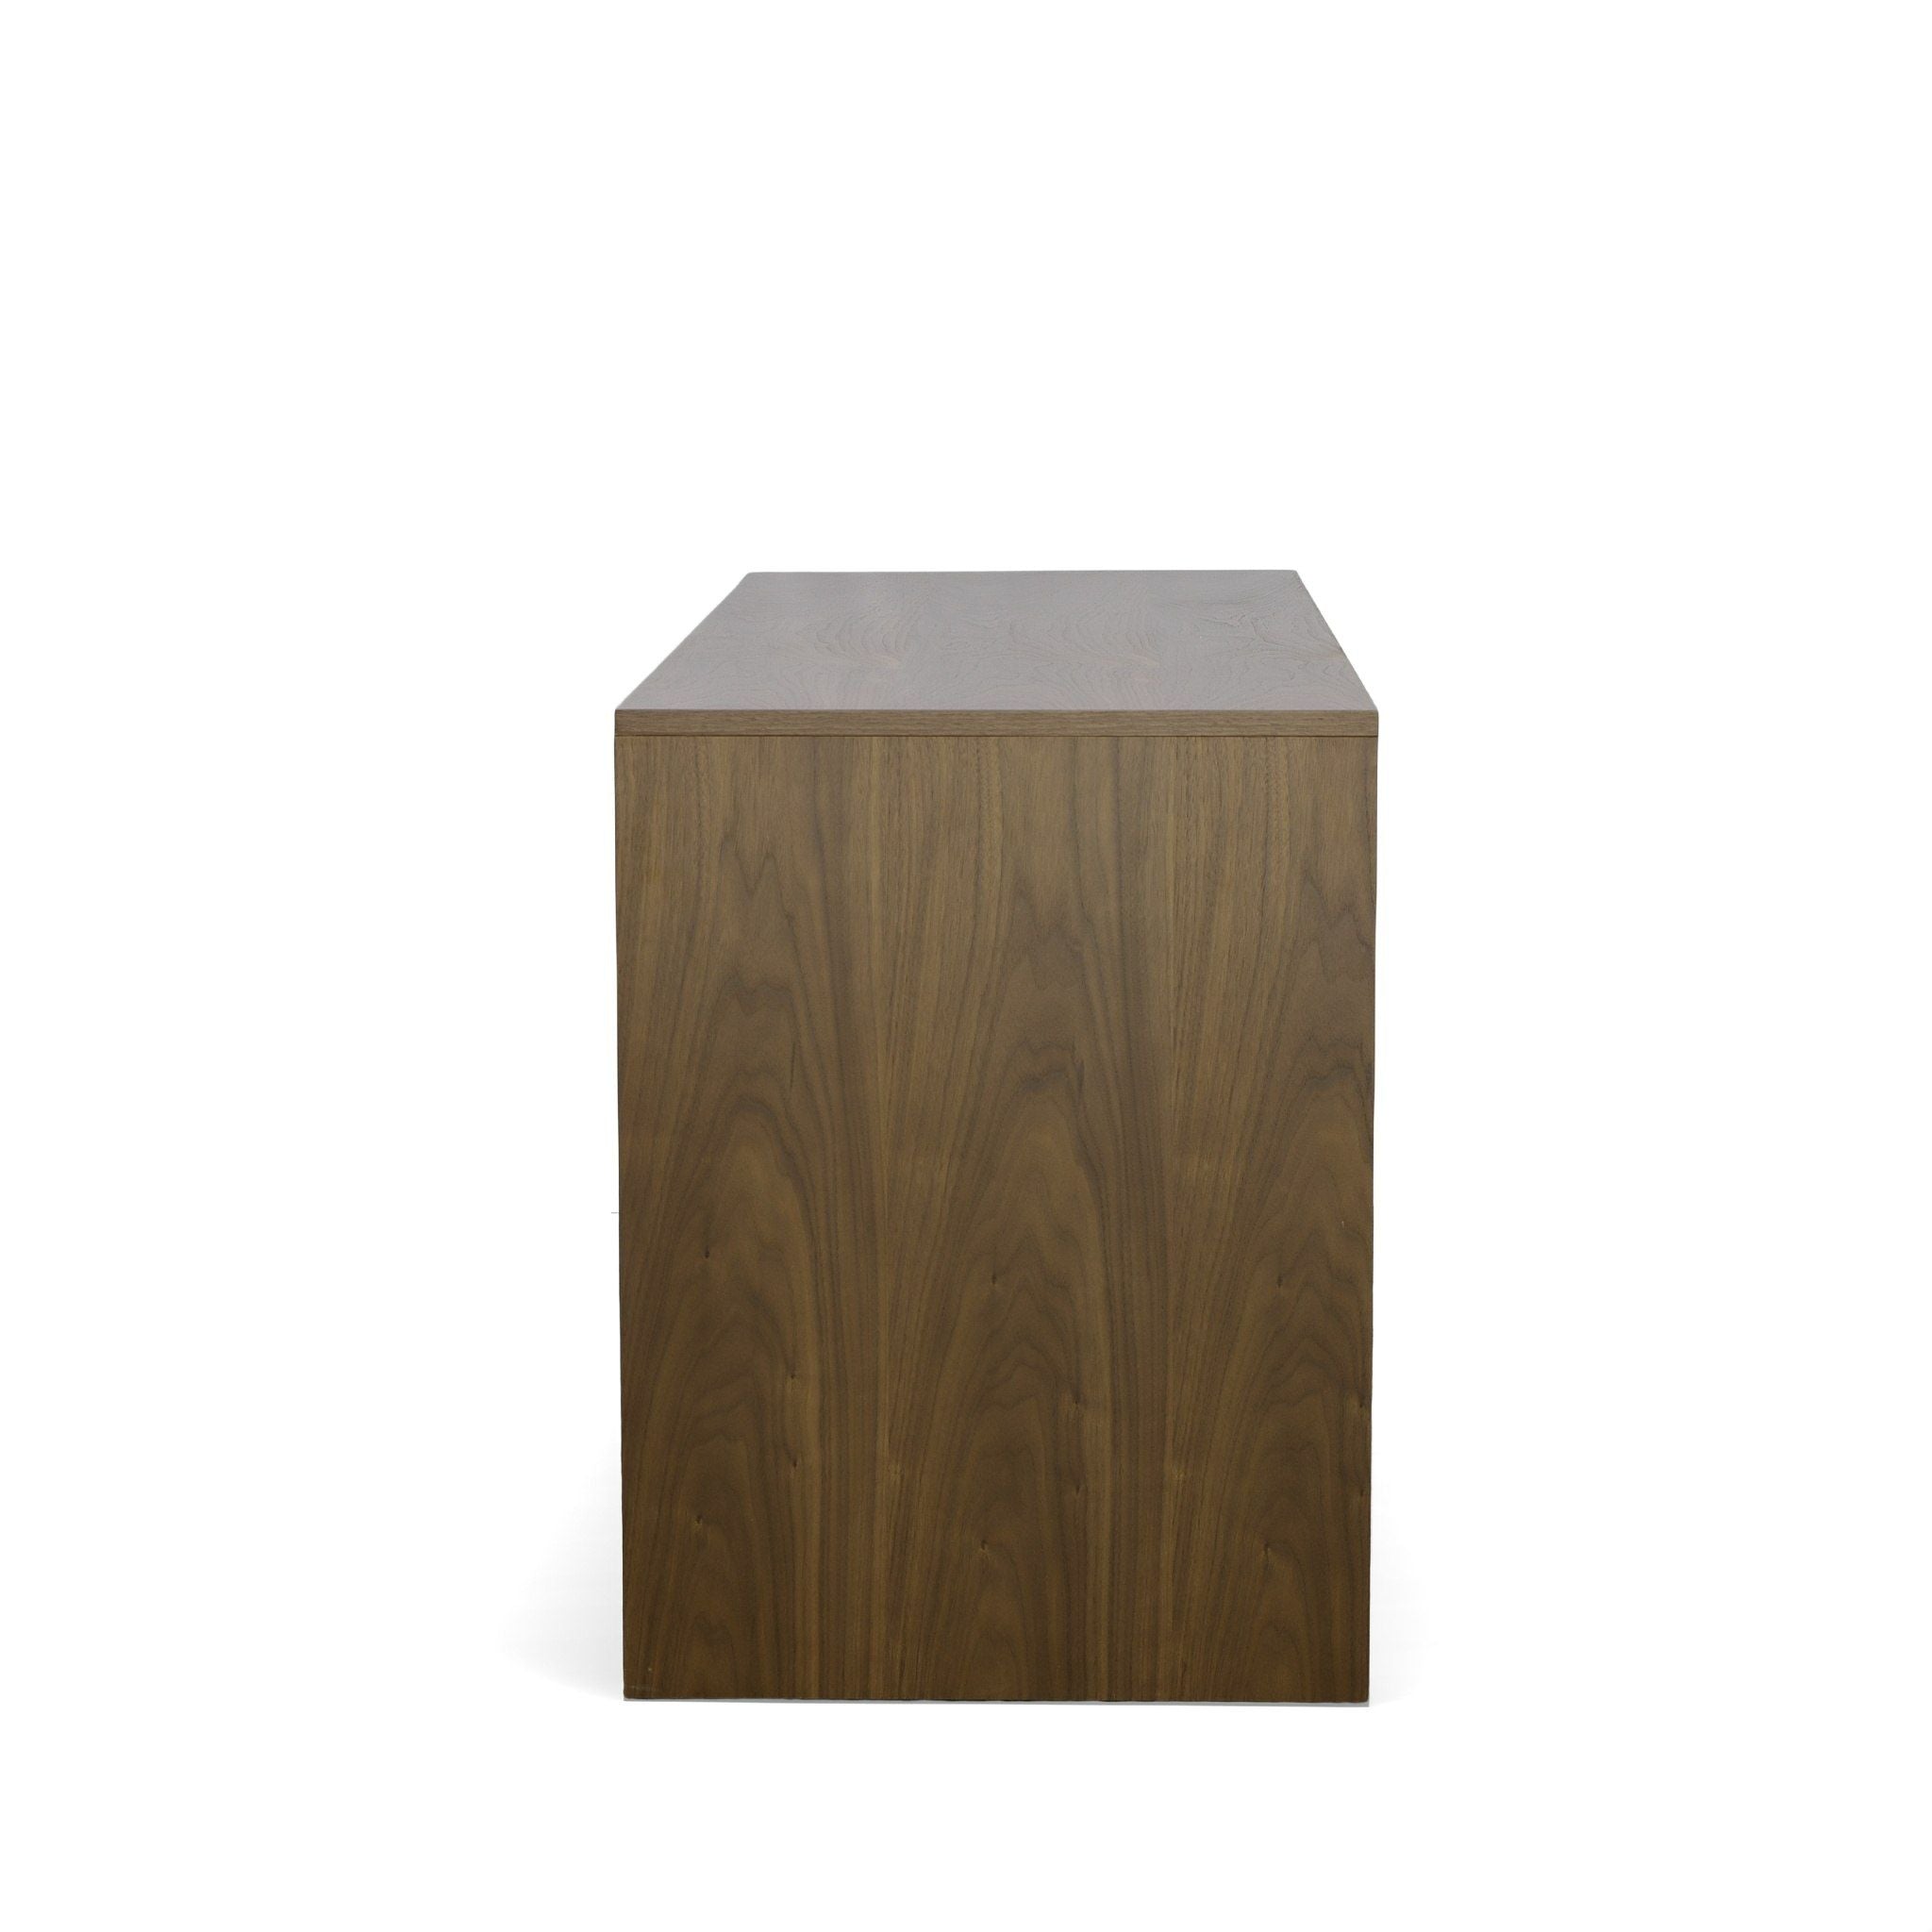 Modrest Amberlie - Modern Walnut Dresser